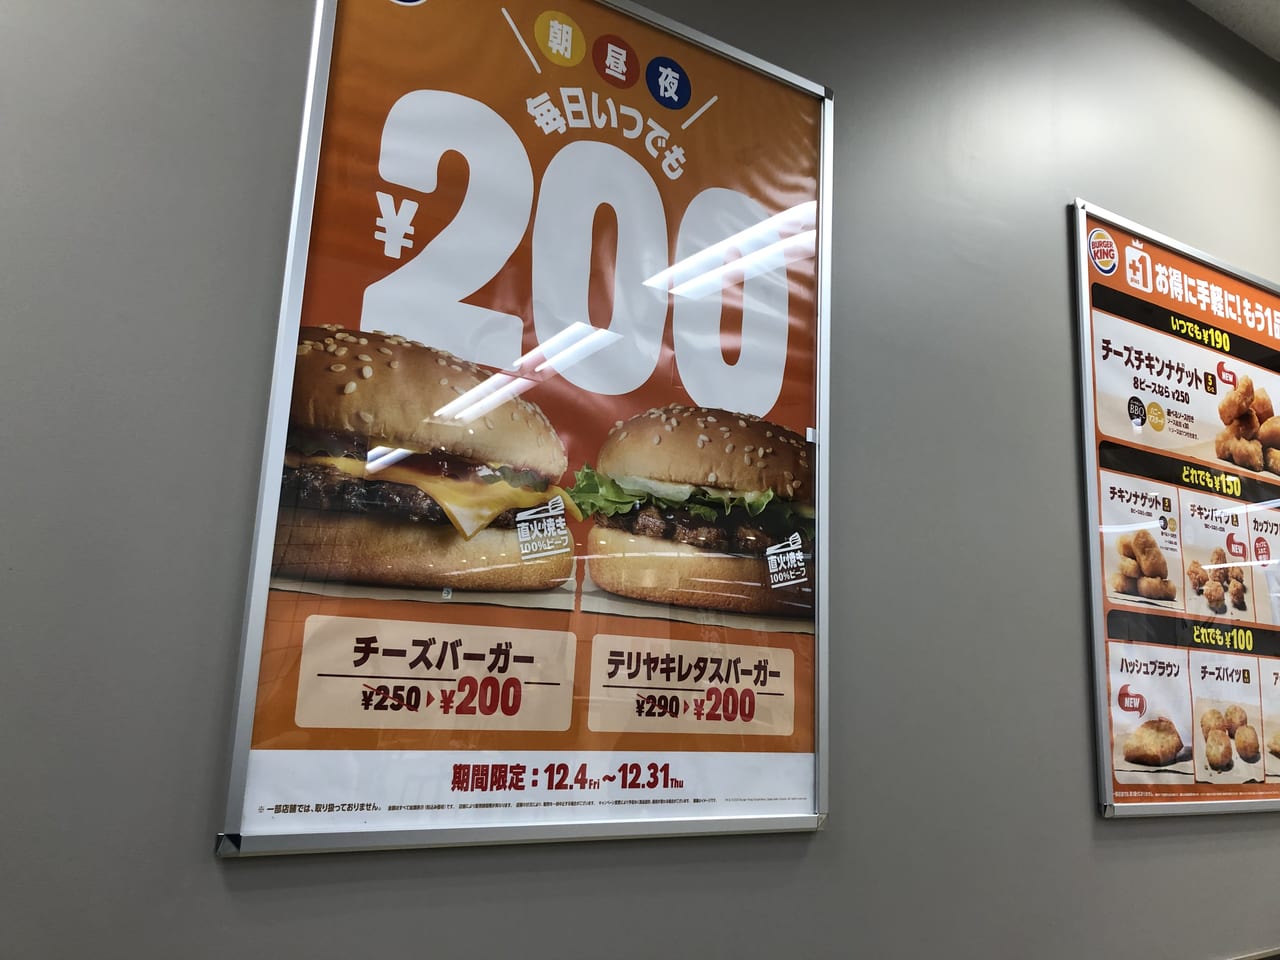 チーズバーガー&テリヤキレタスバーガーが200円